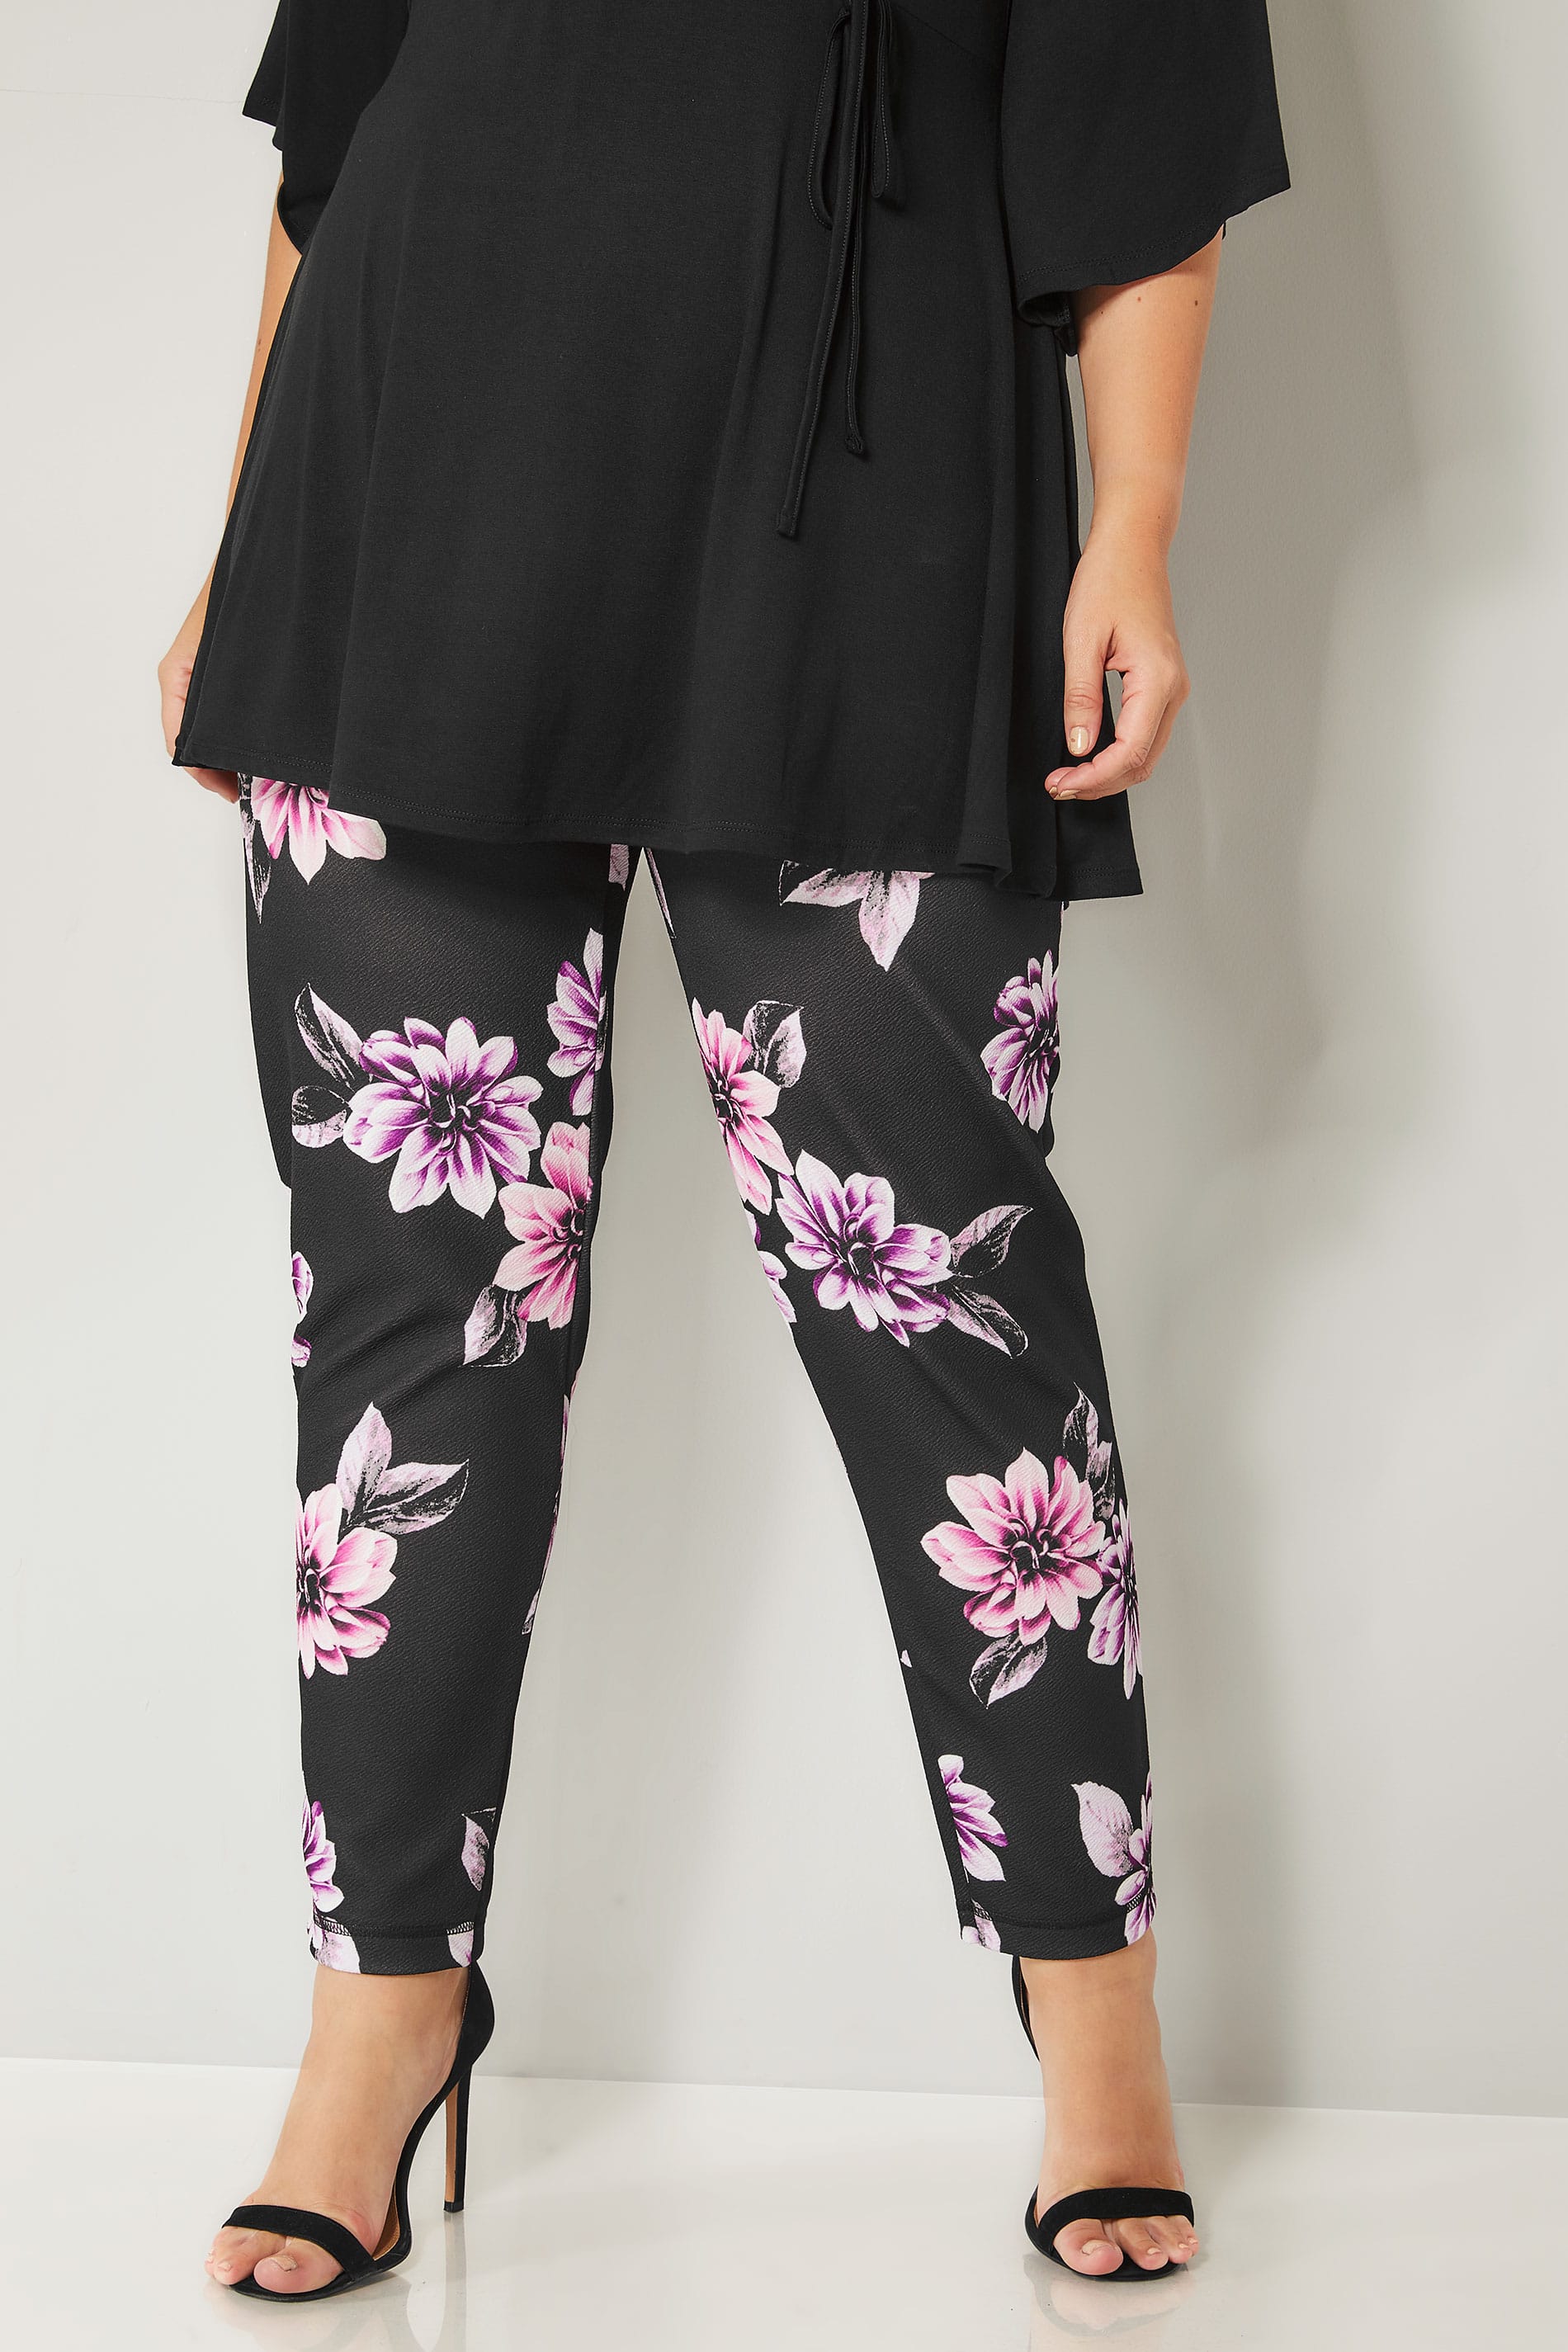 Black & Purple Floral Harem Trousers, plus size 16 to 36